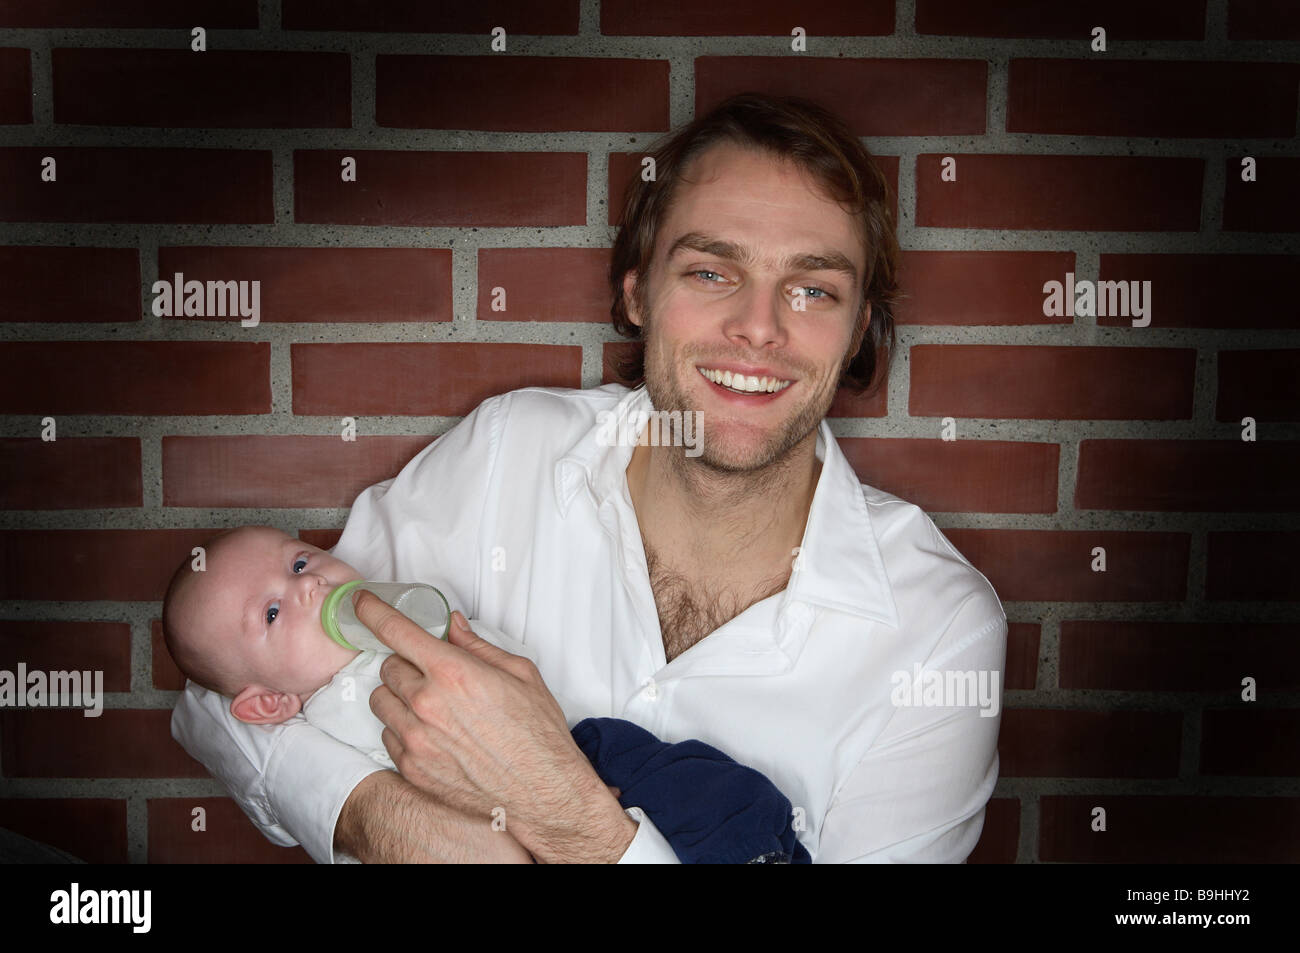 Jeune homme souriant bébé rss personnes portrait flacon de 20 à 30 ans 30 à 40 ans blond foncé barbe de trois jours seul parent gaiement Banque D'Images